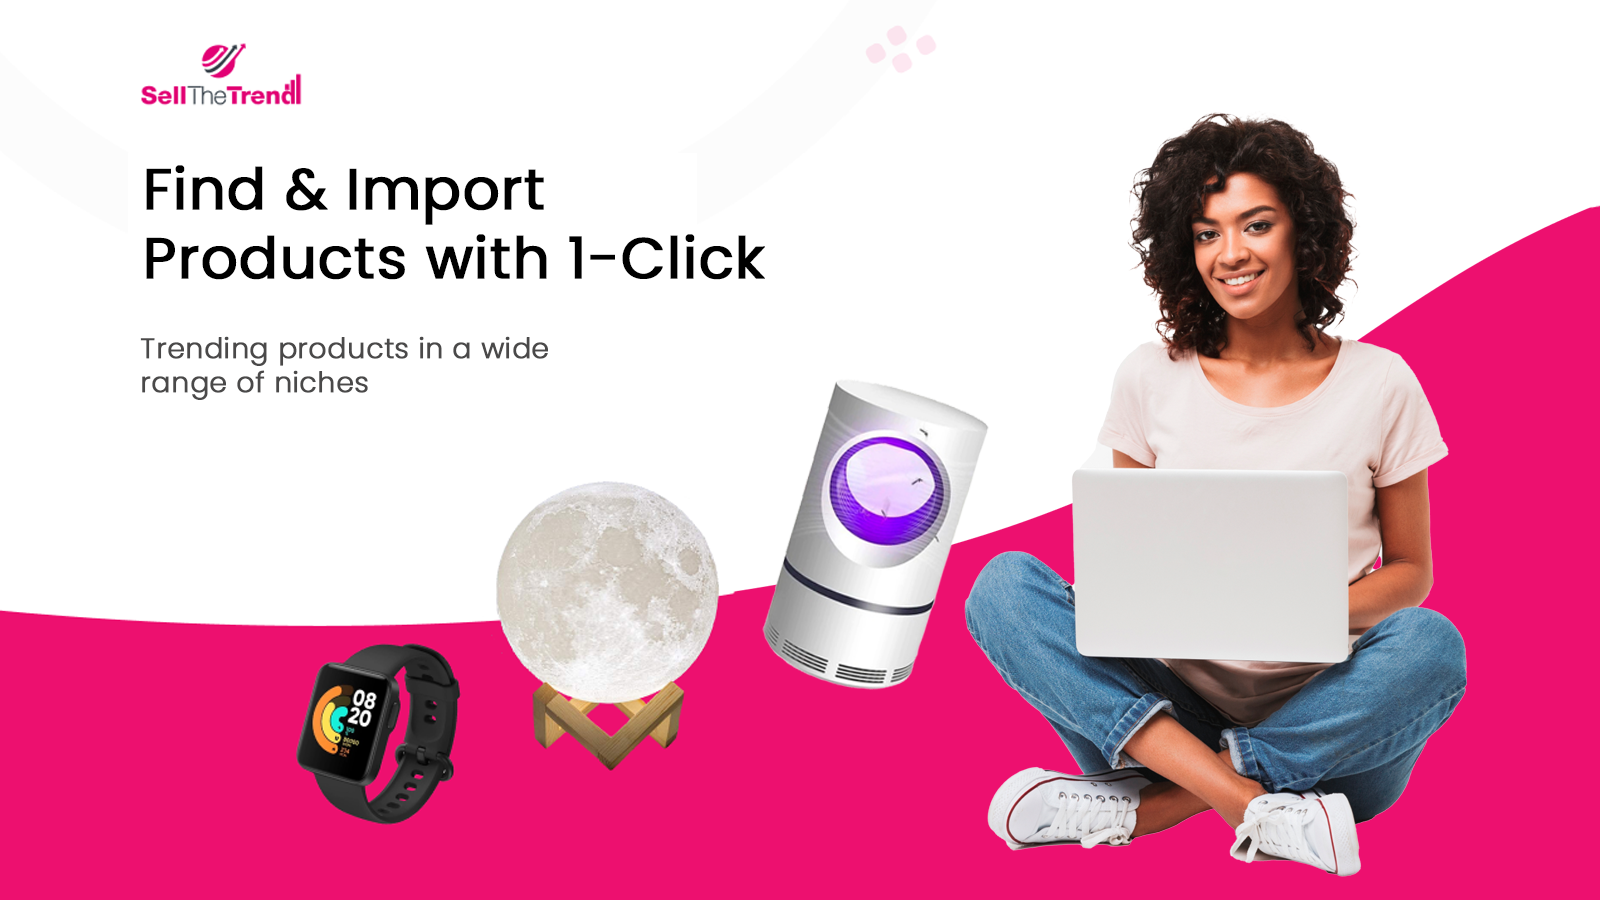 Hitta och importera produkter med 1-klick